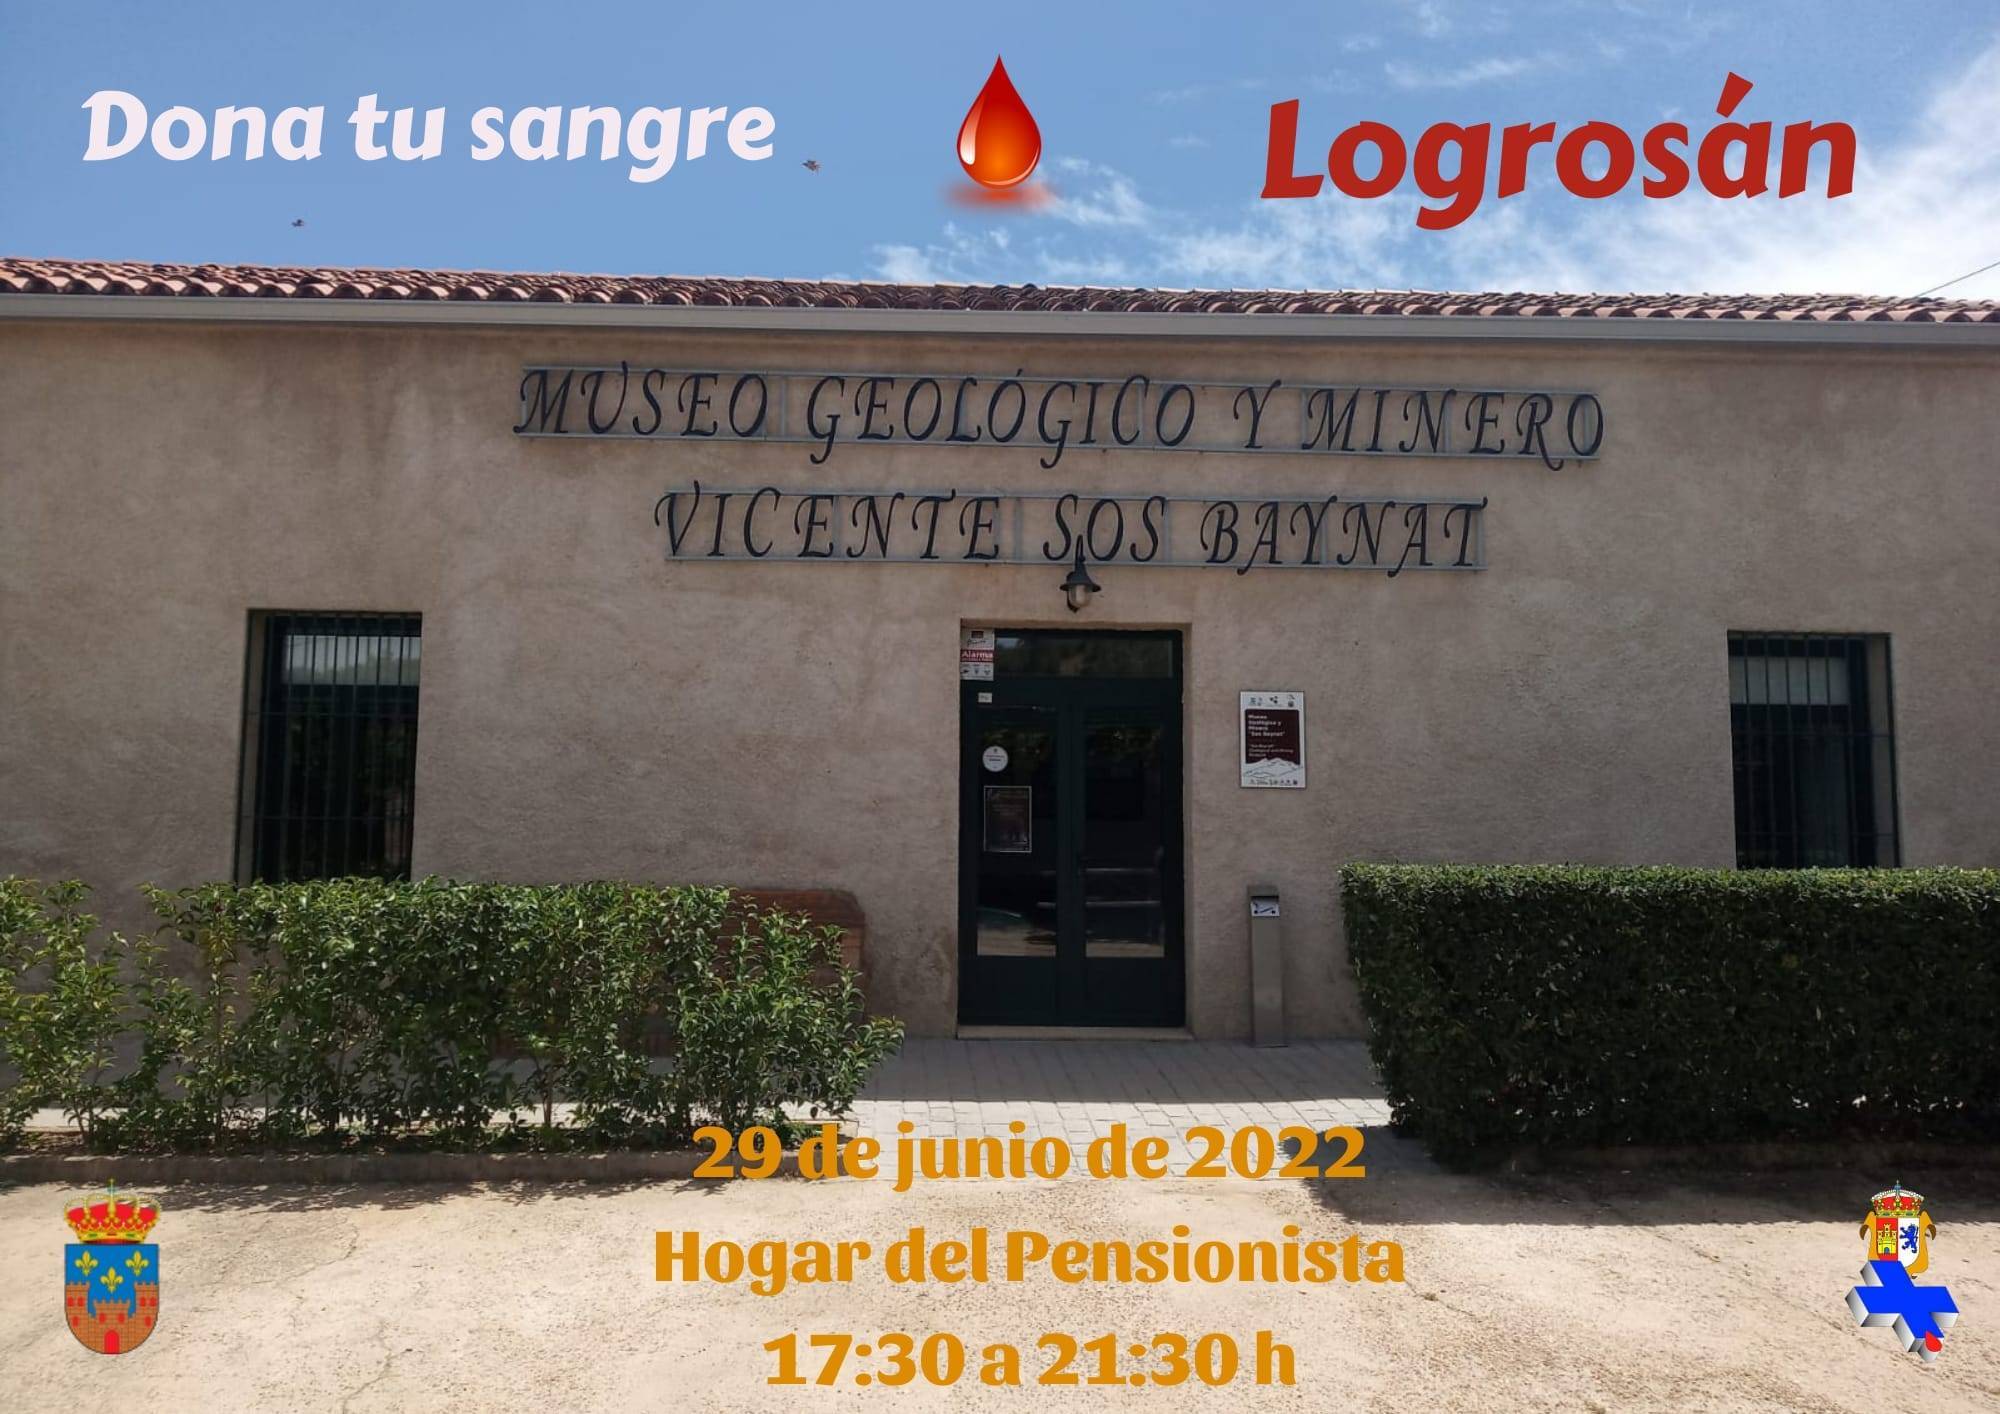 Donación de sangre (junio 2022) - Logrosán (Cáceres)